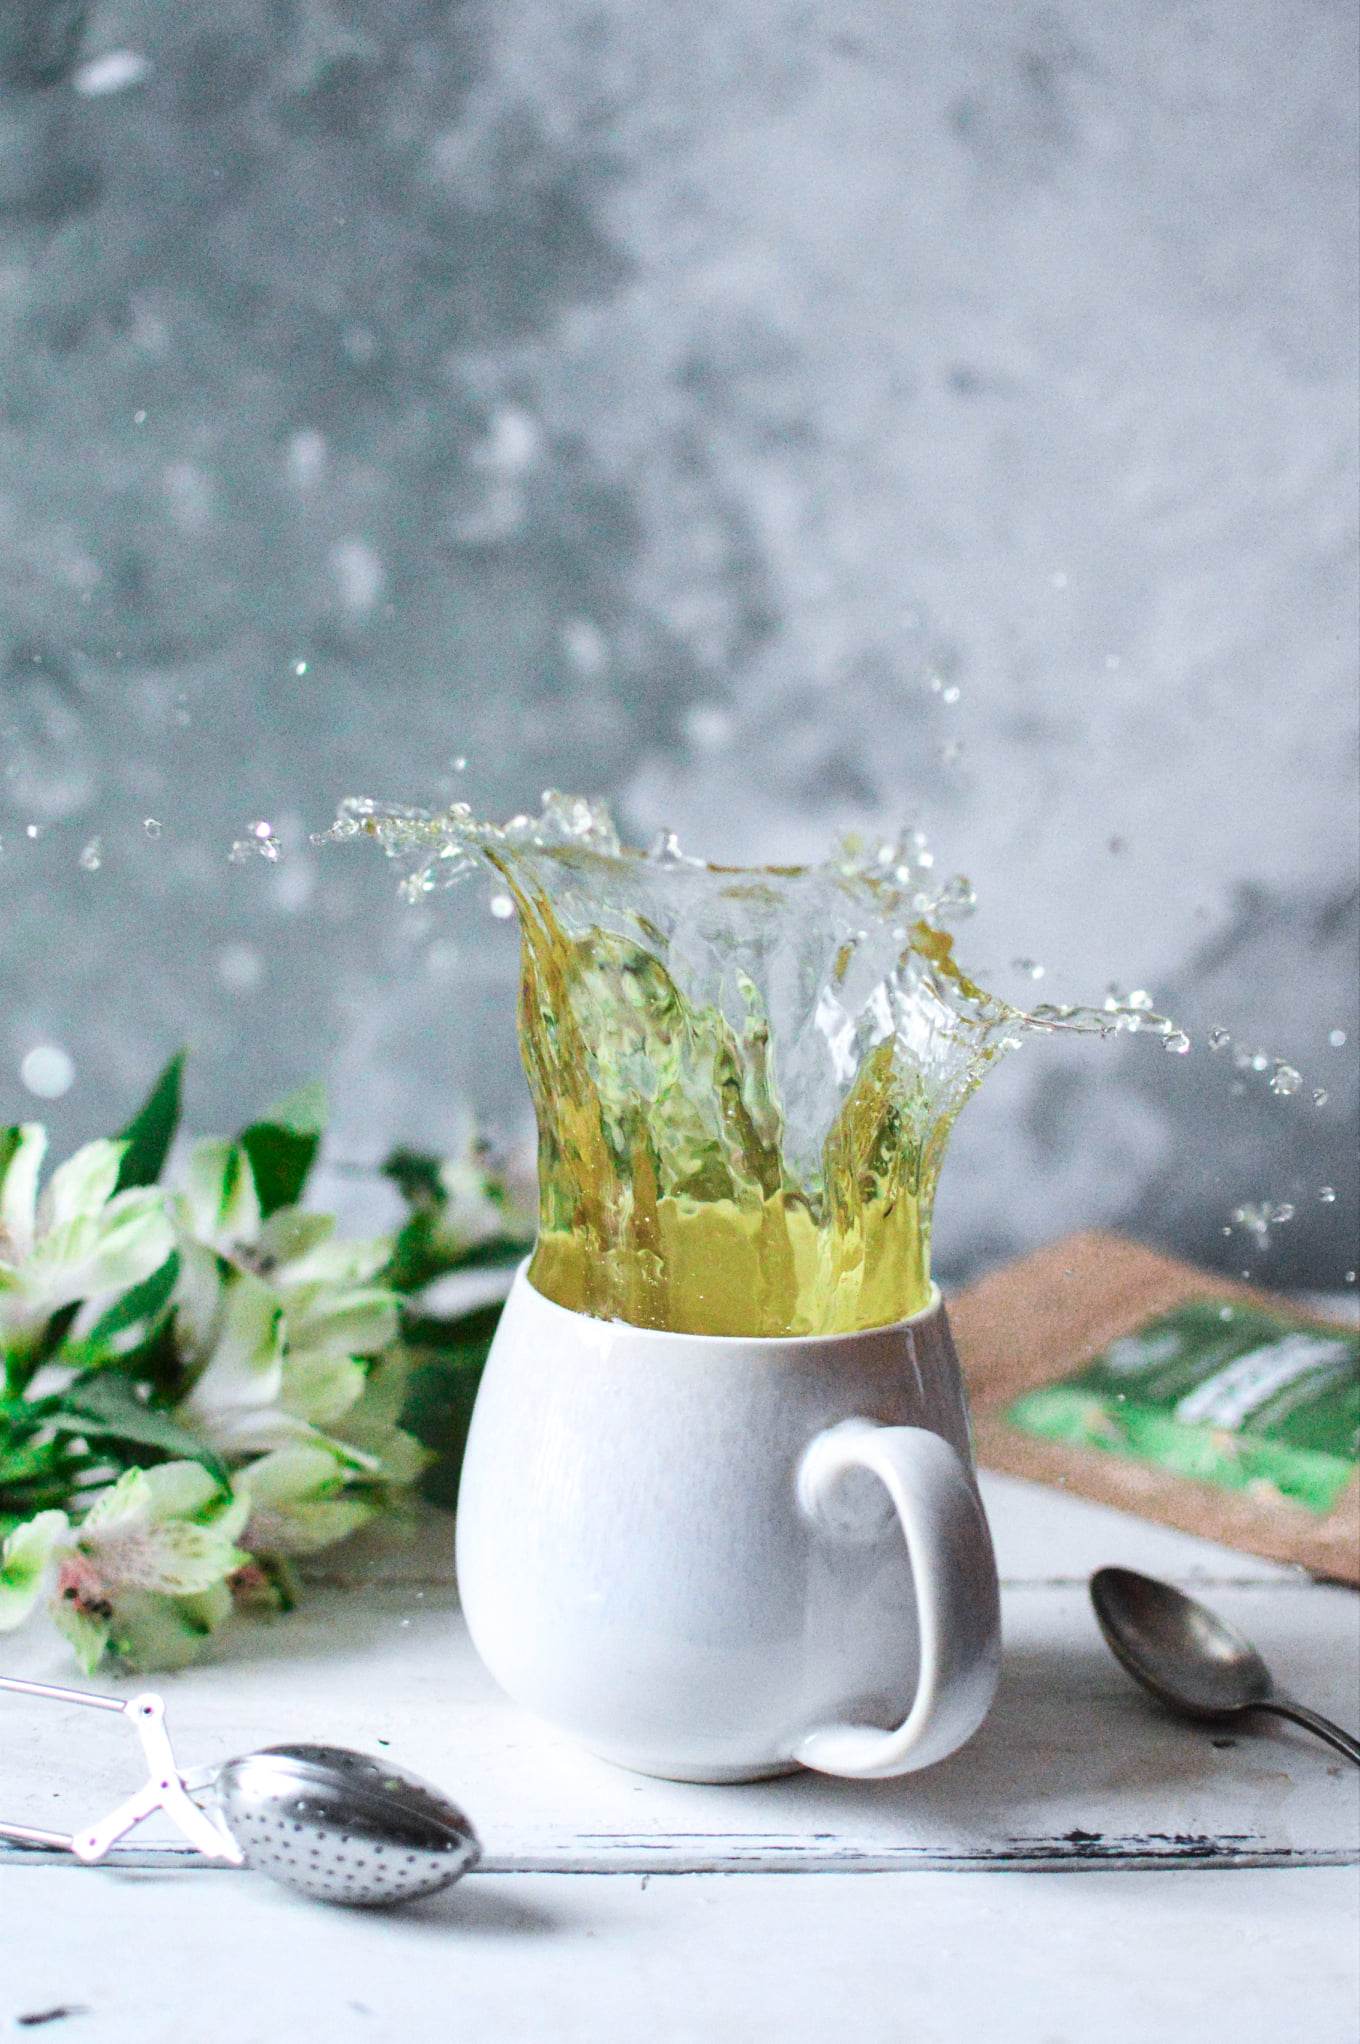 sencha najlepsza herbata zielona herbata opuncja figowa herbata kaktusowa herbata łagodzi obyczaje warsztat herbaty